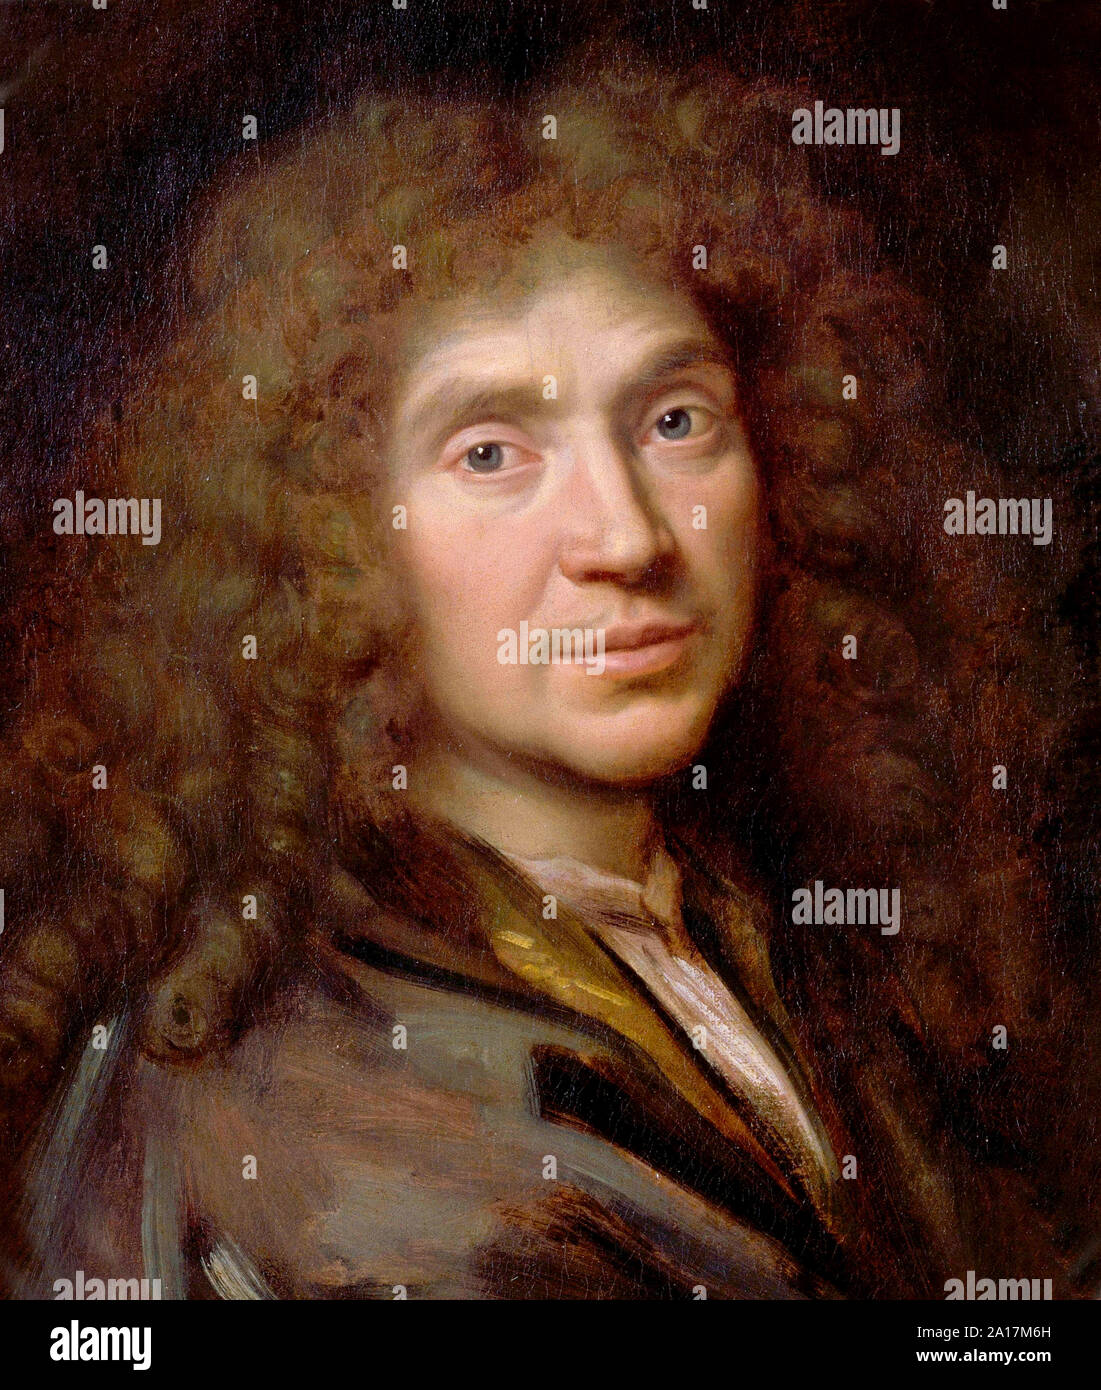 Molière, Jean-Baptiste Poquelin (1622 - 1673), connu sous son nom de scène, Molière, dramaturge, acteur et poète, considéré comme l'un des plus grands écrivains de la langue française et la littérature universelle. Molière portrait par Pierre Mignard Banque D'Images